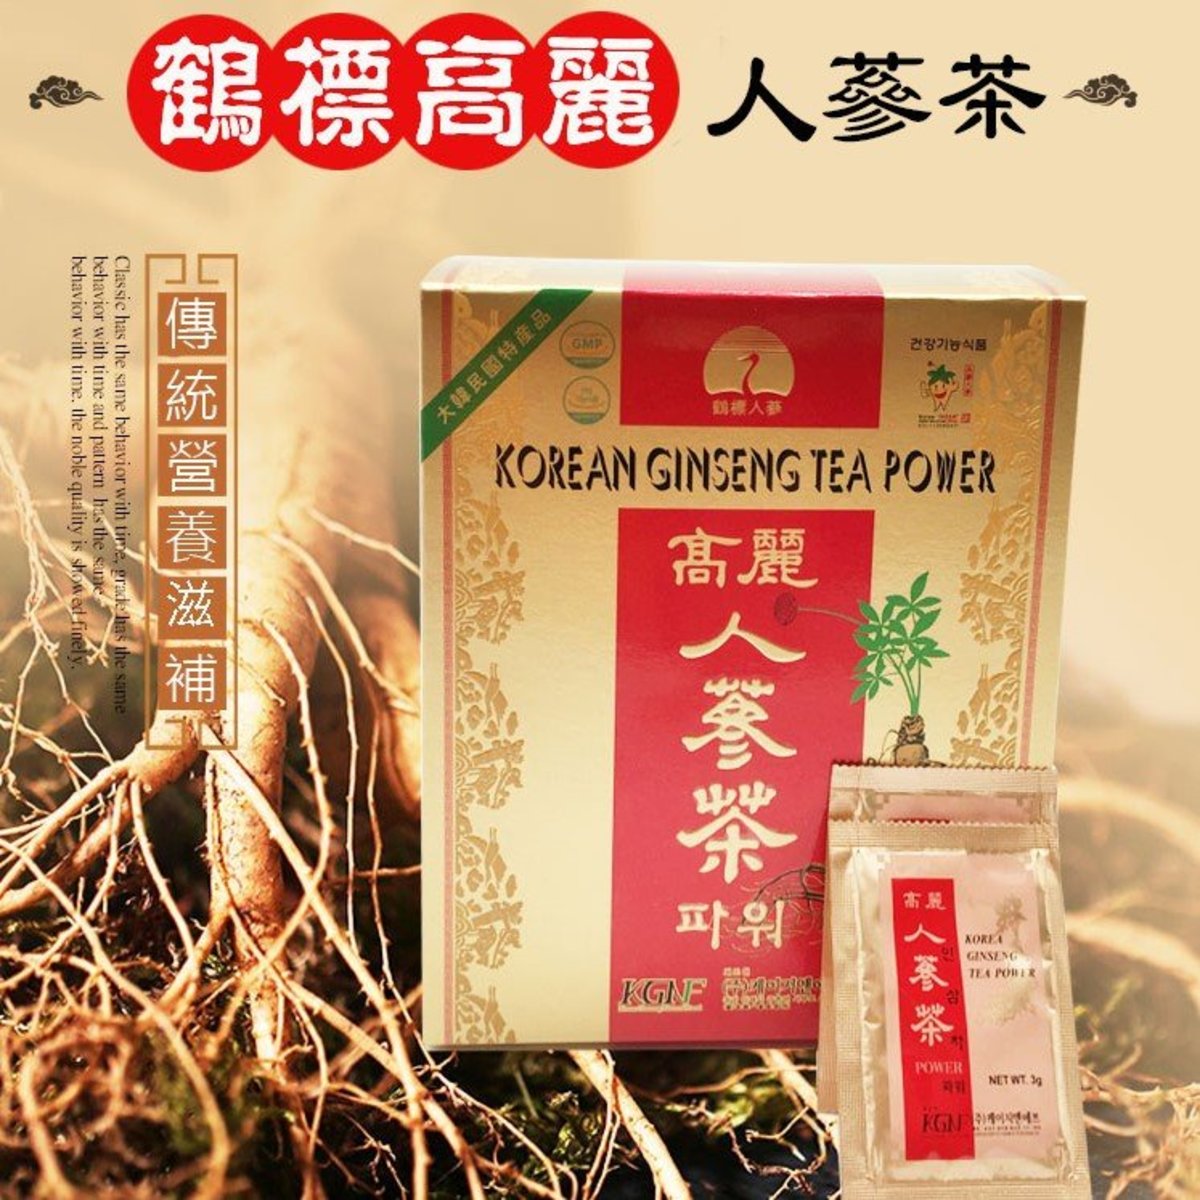 鶴標| 正宗韓國高麗人蔘茶(3 x 100包) | HKTVmall 香港最大網購平台